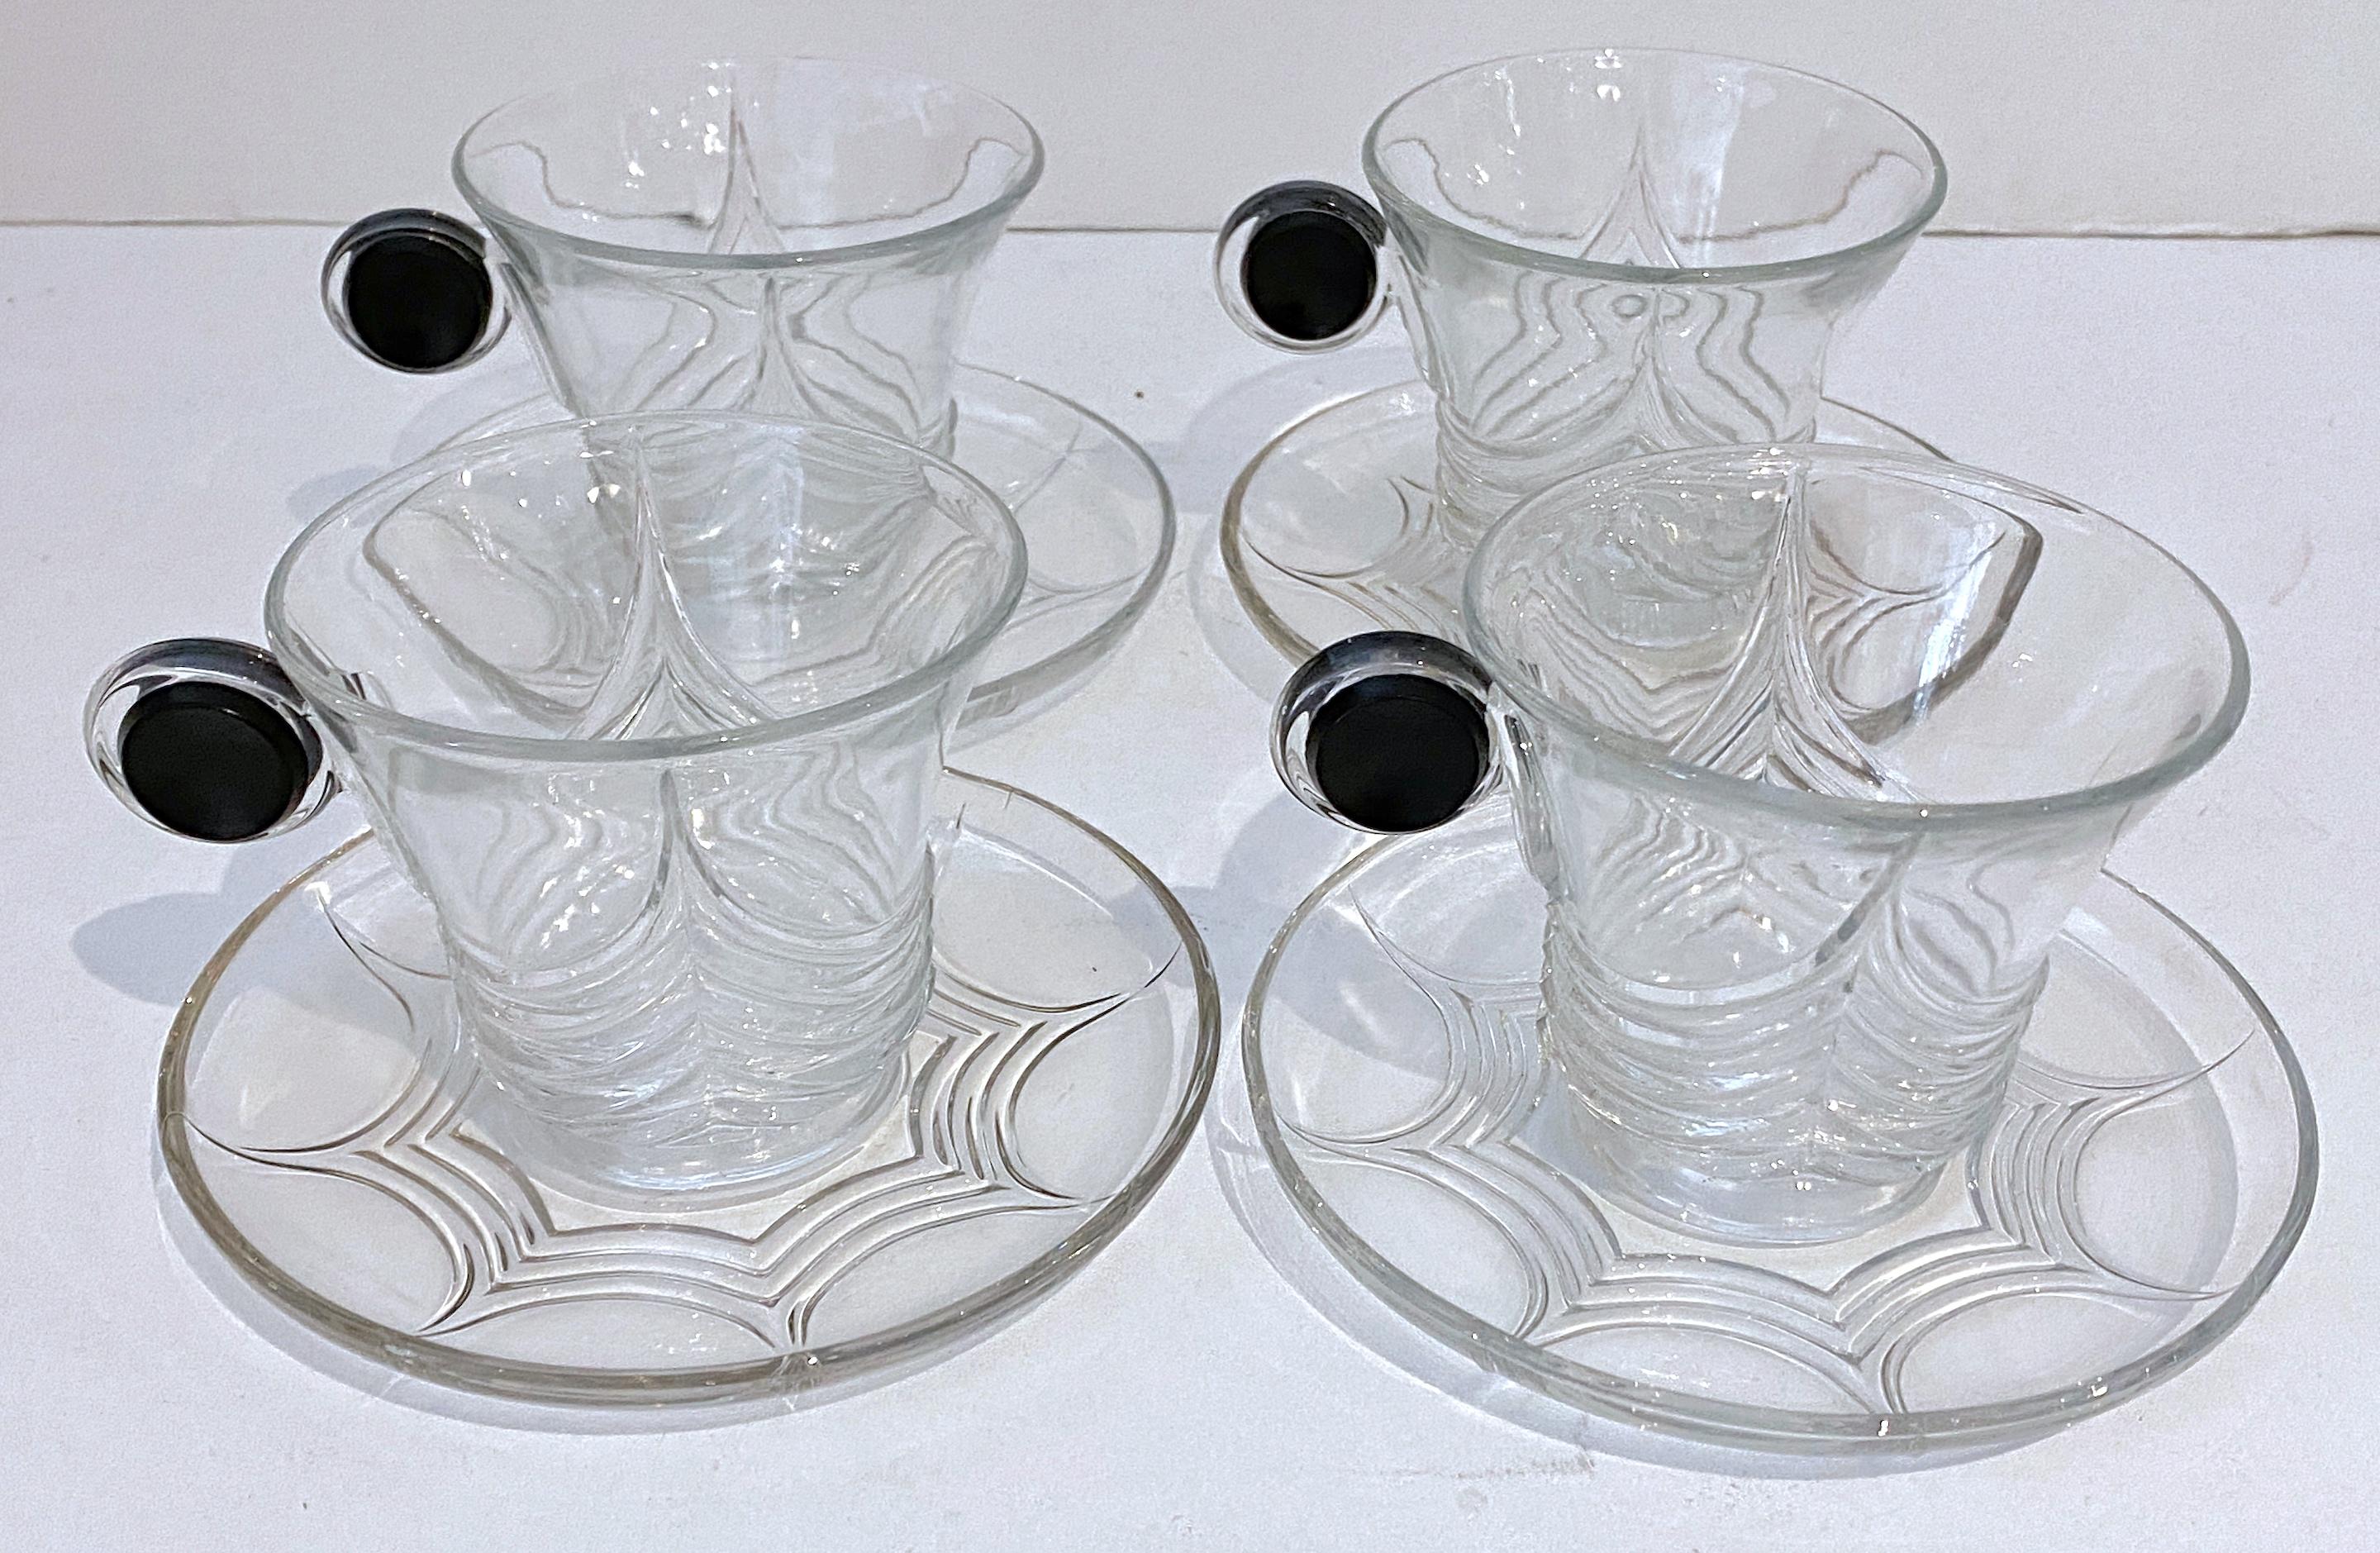 4 Art-Déco-Tasse und Untertassen „Stanhope“ aus Heisey-Glas, von Walter Von Hessen
A.H. Die Heisey Company wurde 1895 in Newark, Ohio, gegründet und 1957 geschlossen.
Muster - Stanhope von Heisey
Ausgelaufen 1936 - 1937

Dieser Satz von vier Art